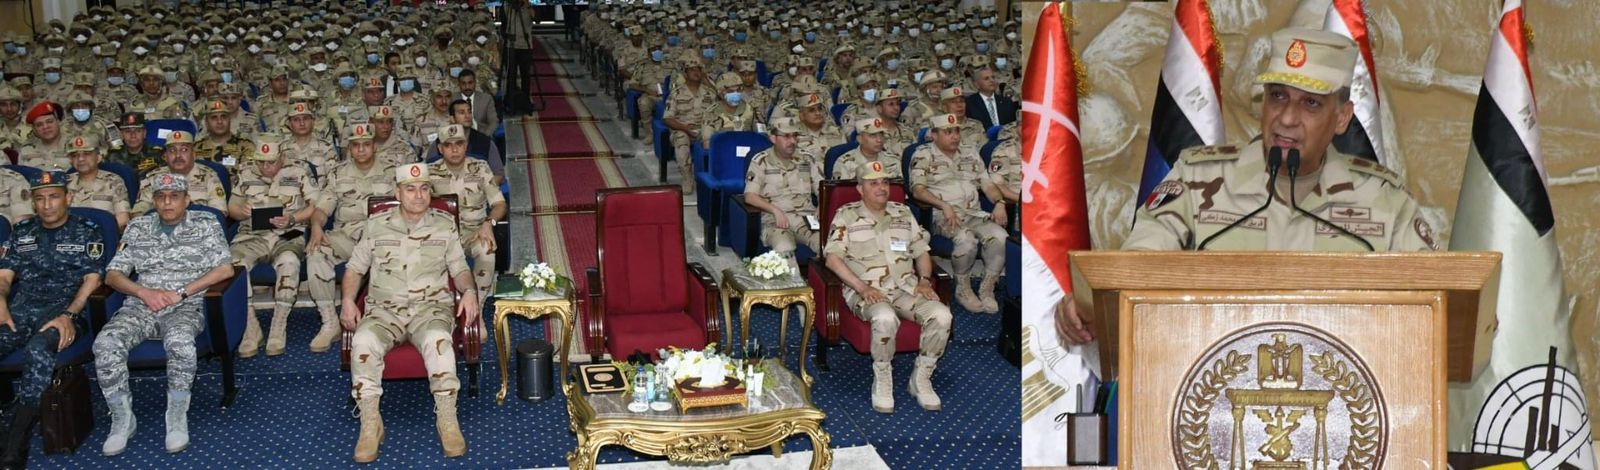 وزير الدفاع يشهد المرحلة الرئيسية لمشروع خالد - 20بالمنطقة الجنوبية العسكرية